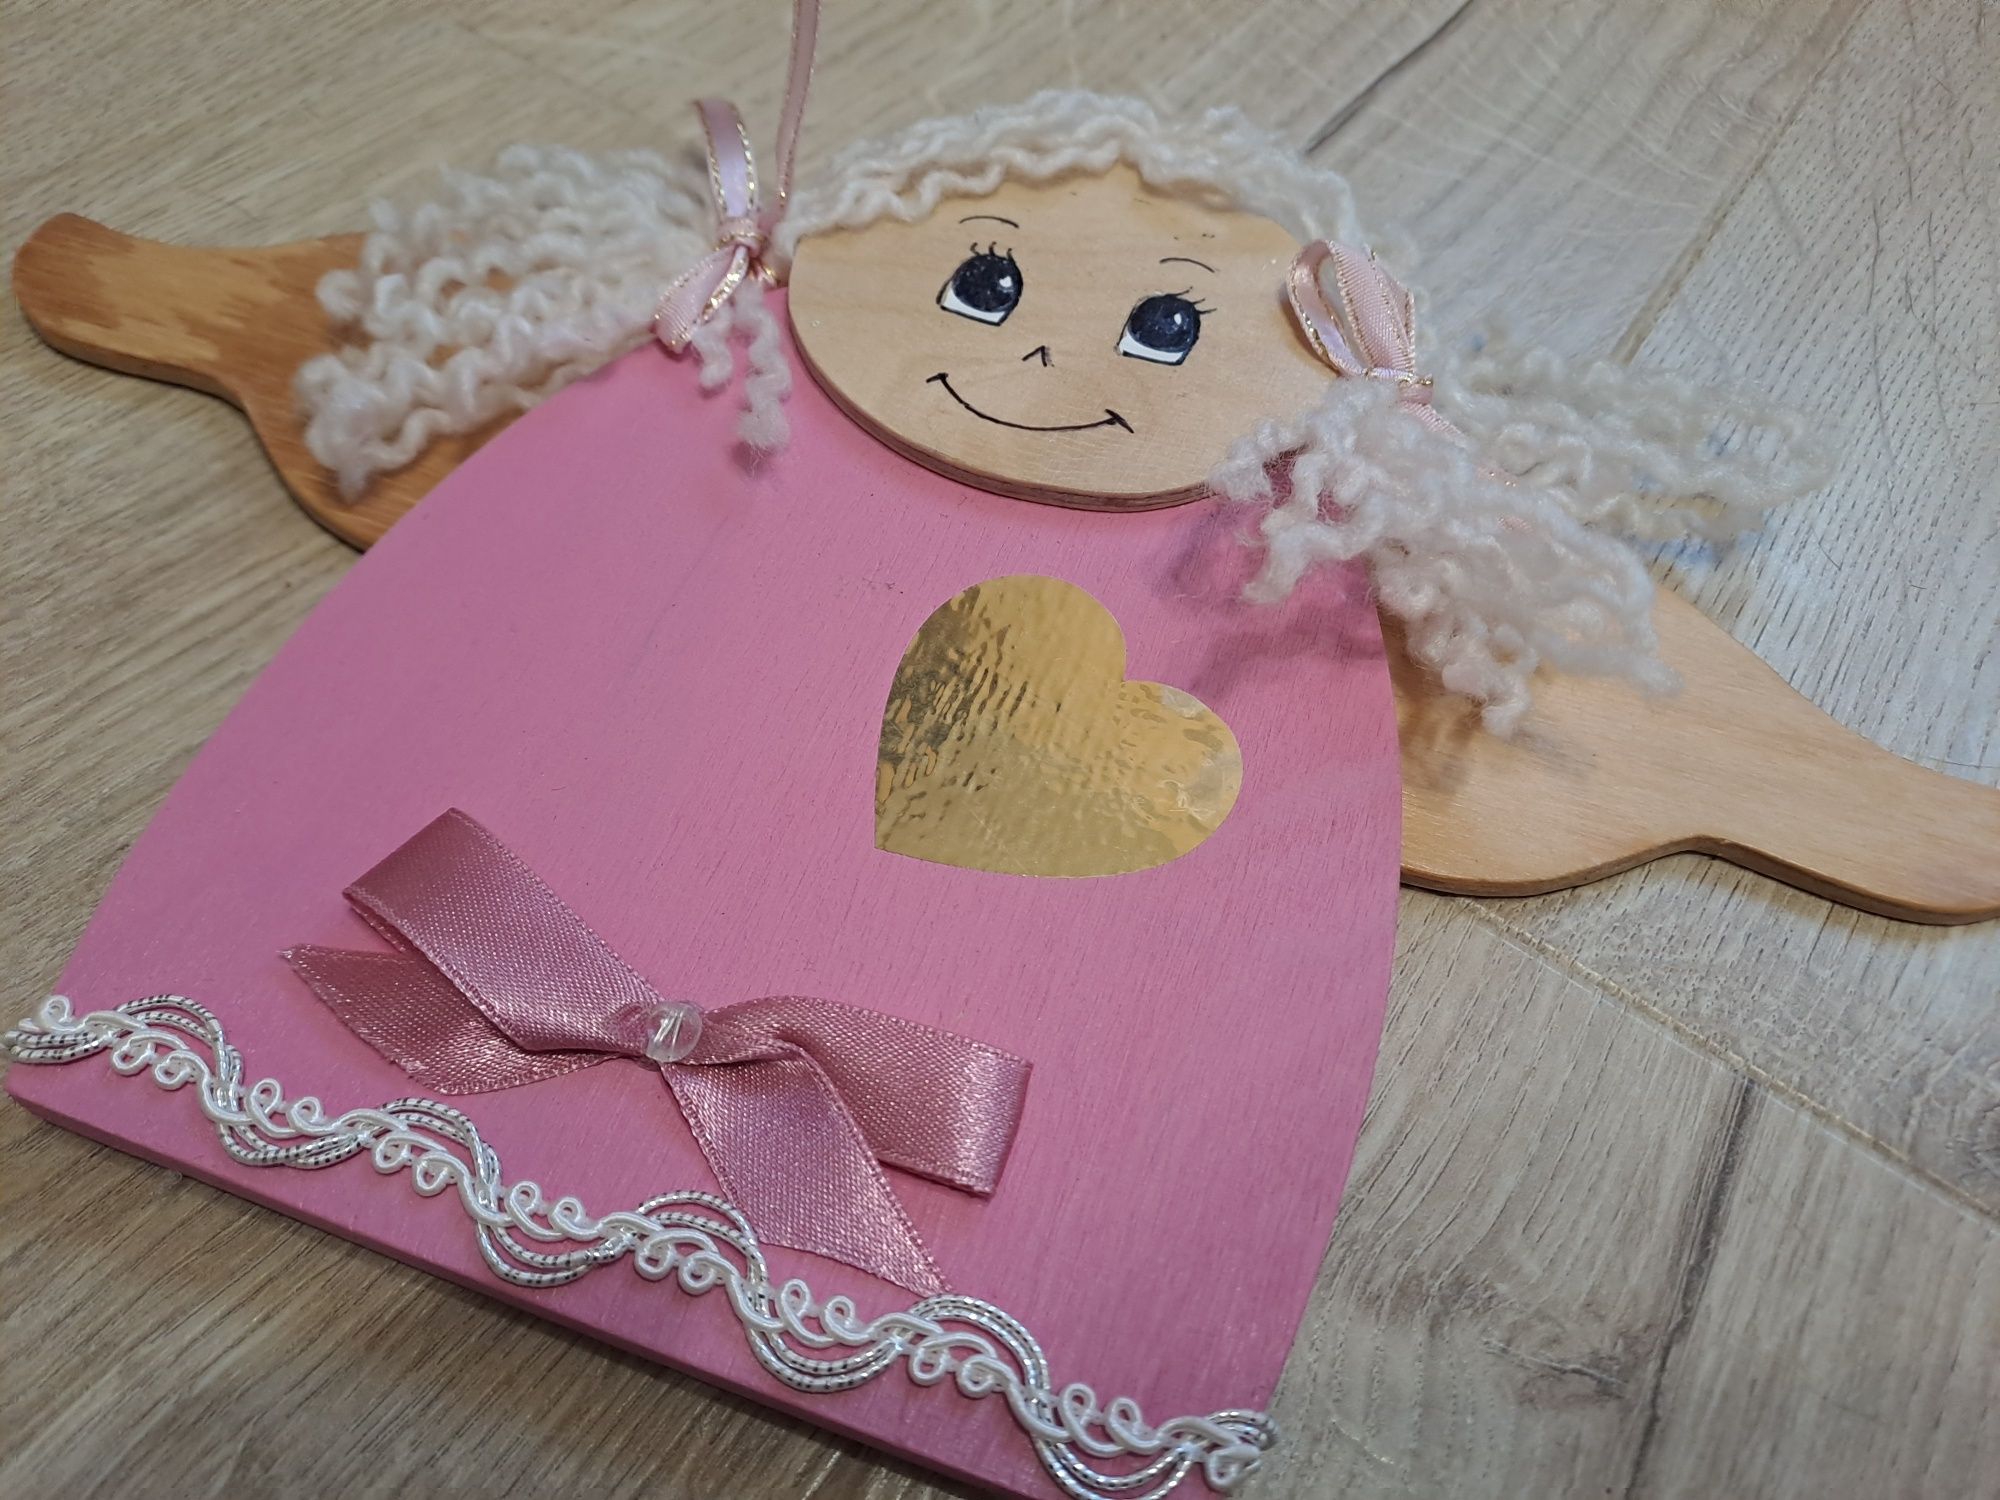 Drewniany aniołek różowy dla dziewczynki prezent obrazek zawieszka